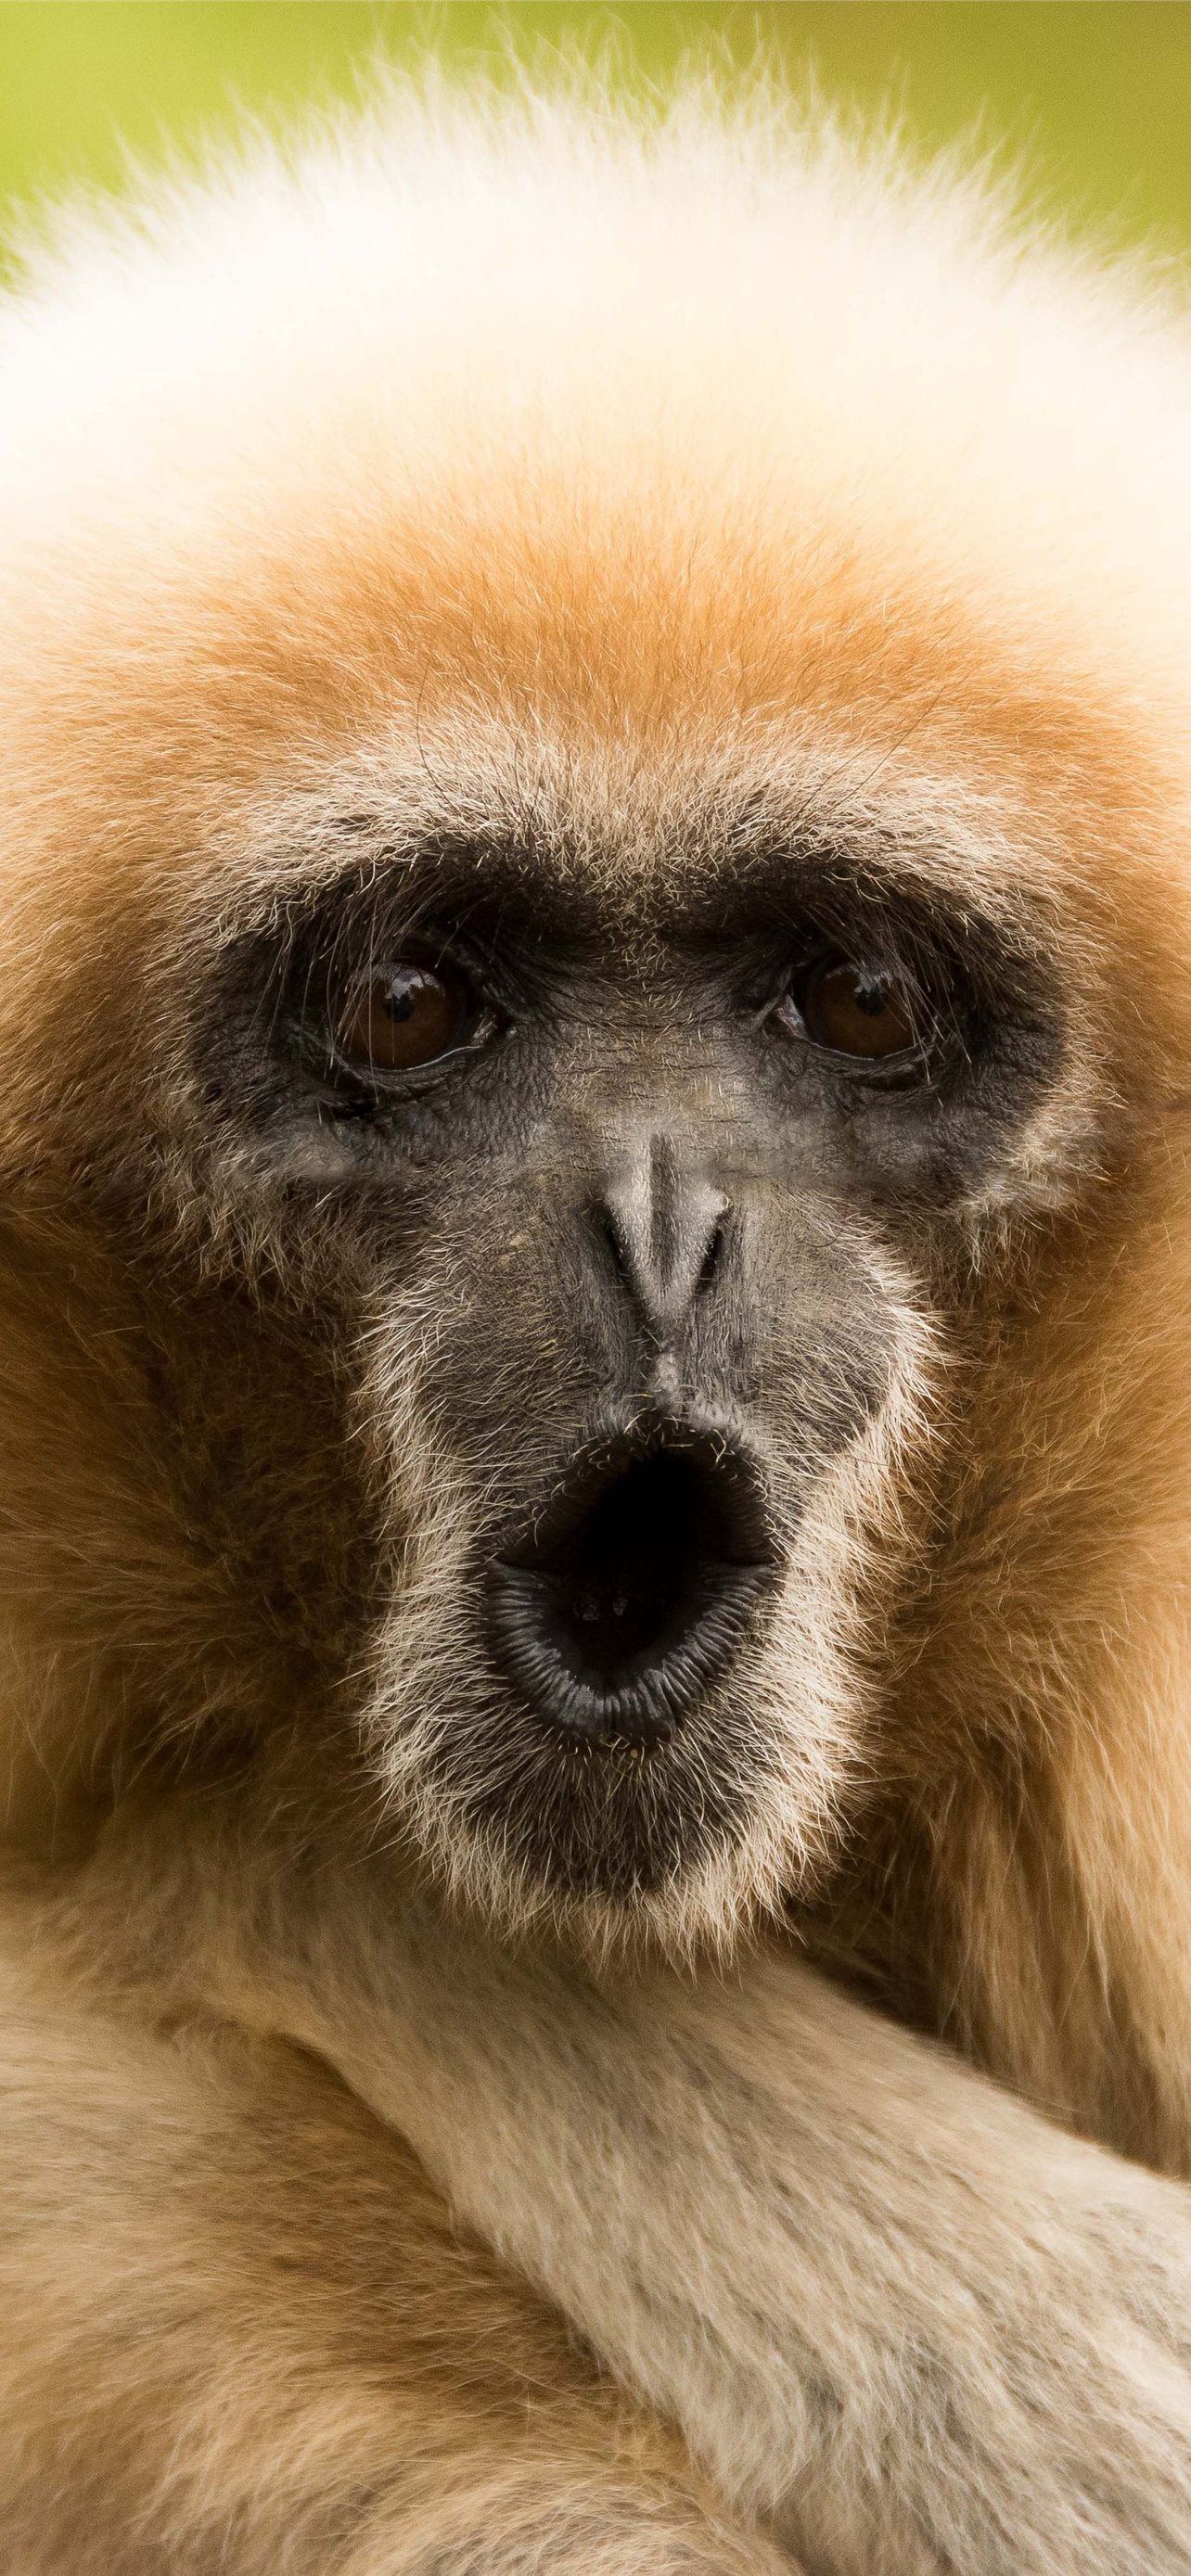 Background image Monkey Animals Gibbon  TOP Free images